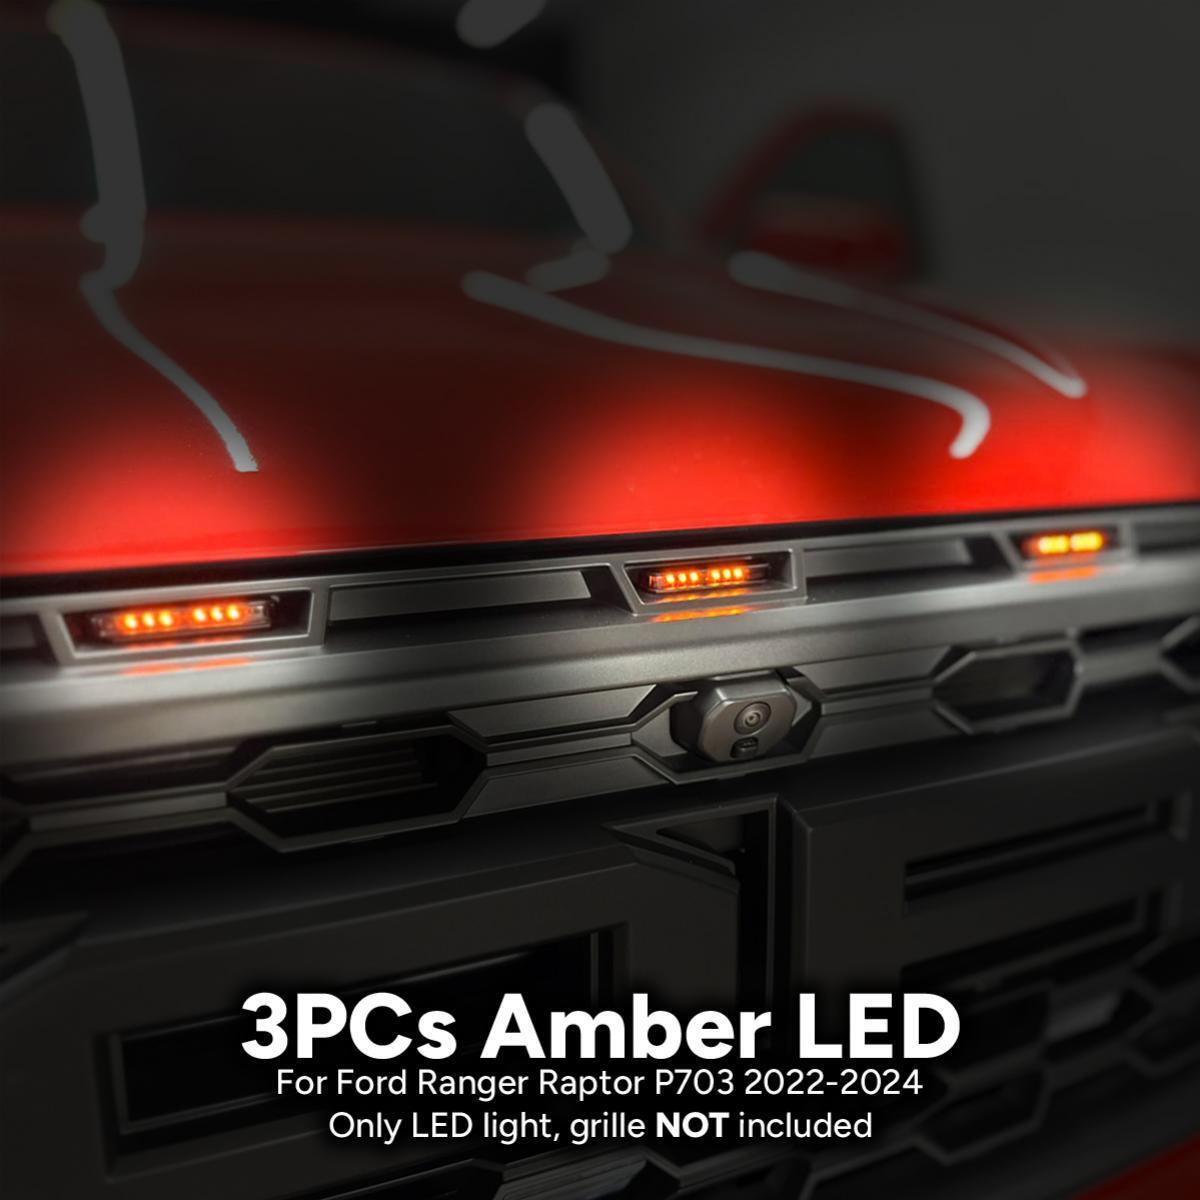 FIT Ford Ranger Raptor P703 2022-2024 NEXT-GEN Amber LED Front Grille Light 3PCs